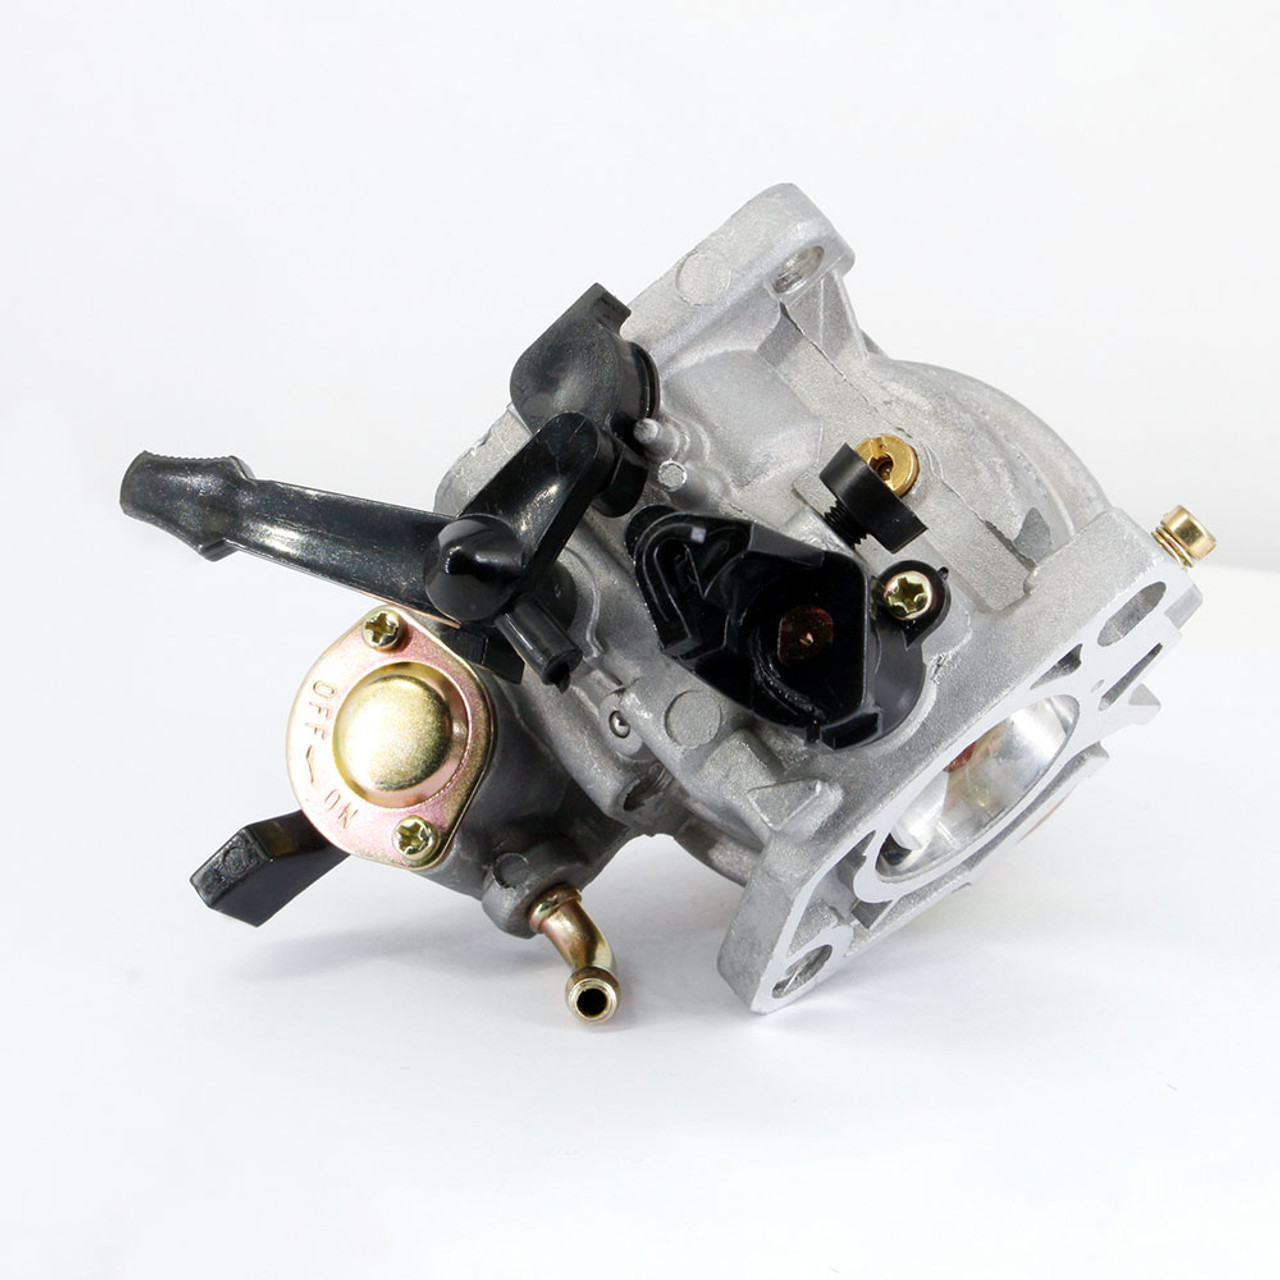 Carburetor For Gx390 Gx340 13hp 4-stroke Engine Lawn Mower Trailer